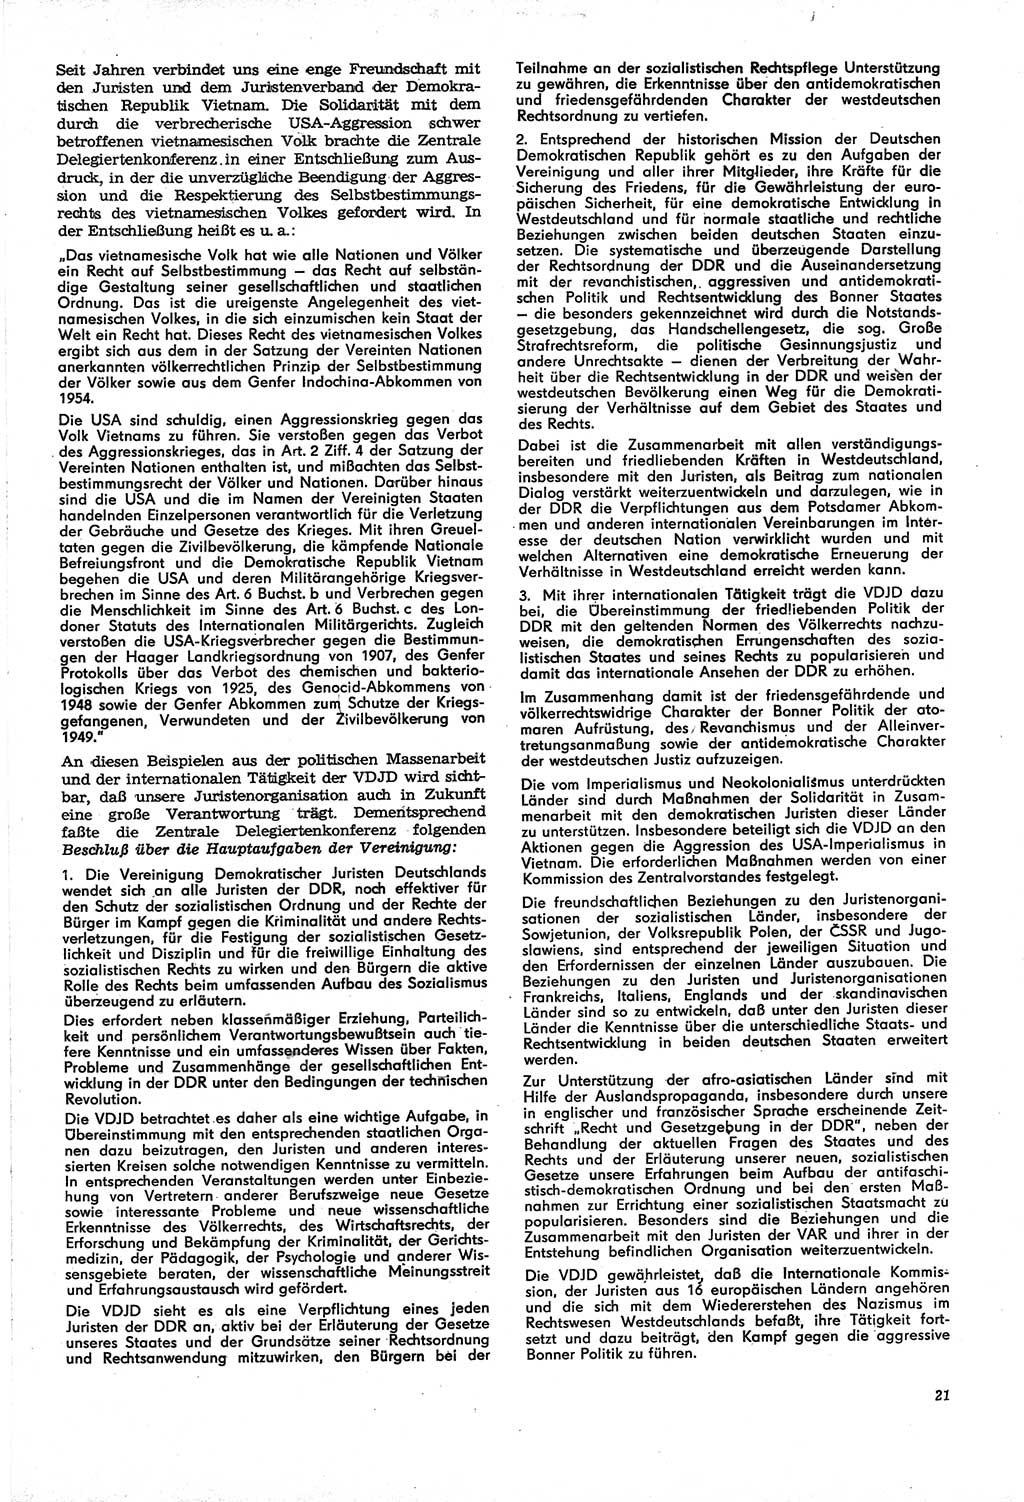 Neue Justiz (NJ), Zeitschrift für Recht und Rechtswissenschaft [Deutsche Demokratische Republik (DDR)], 21. Jahrgang 1967, Seite 21 (NJ DDR 1967, S. 21)